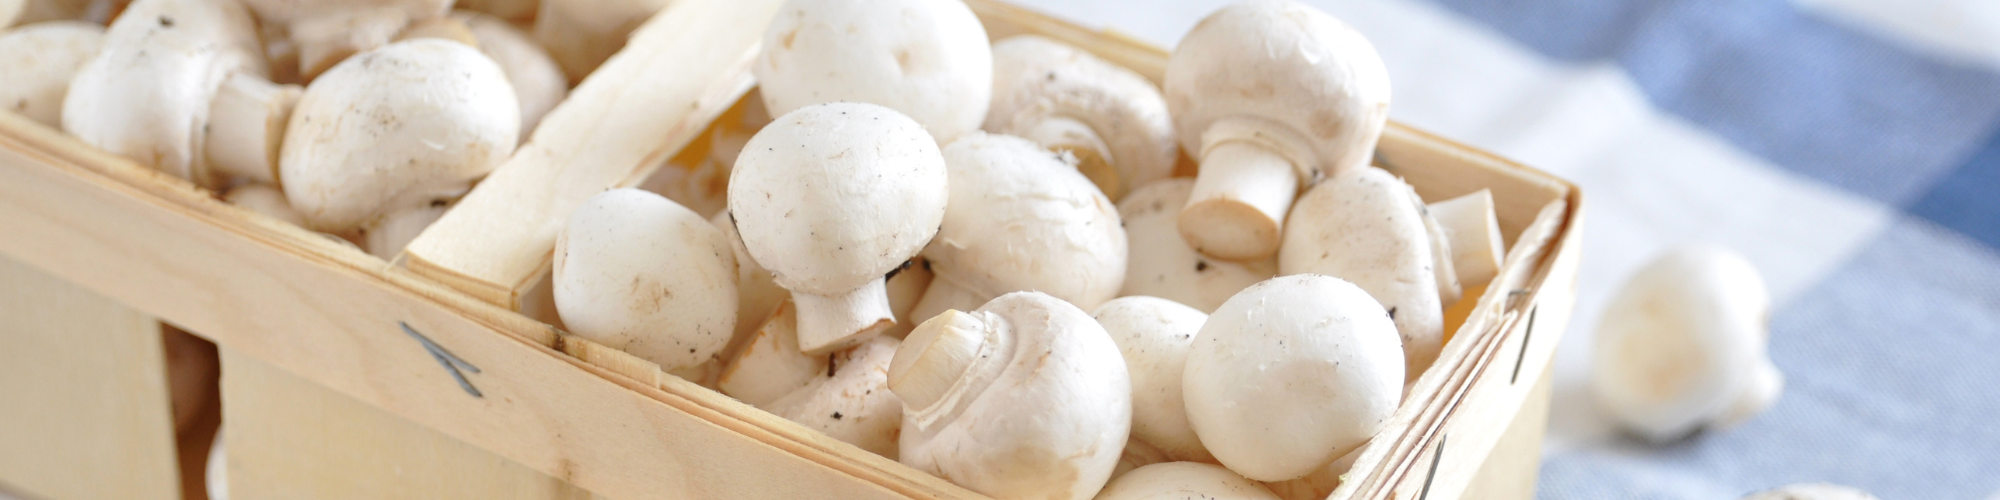 Mushrooms & truffels